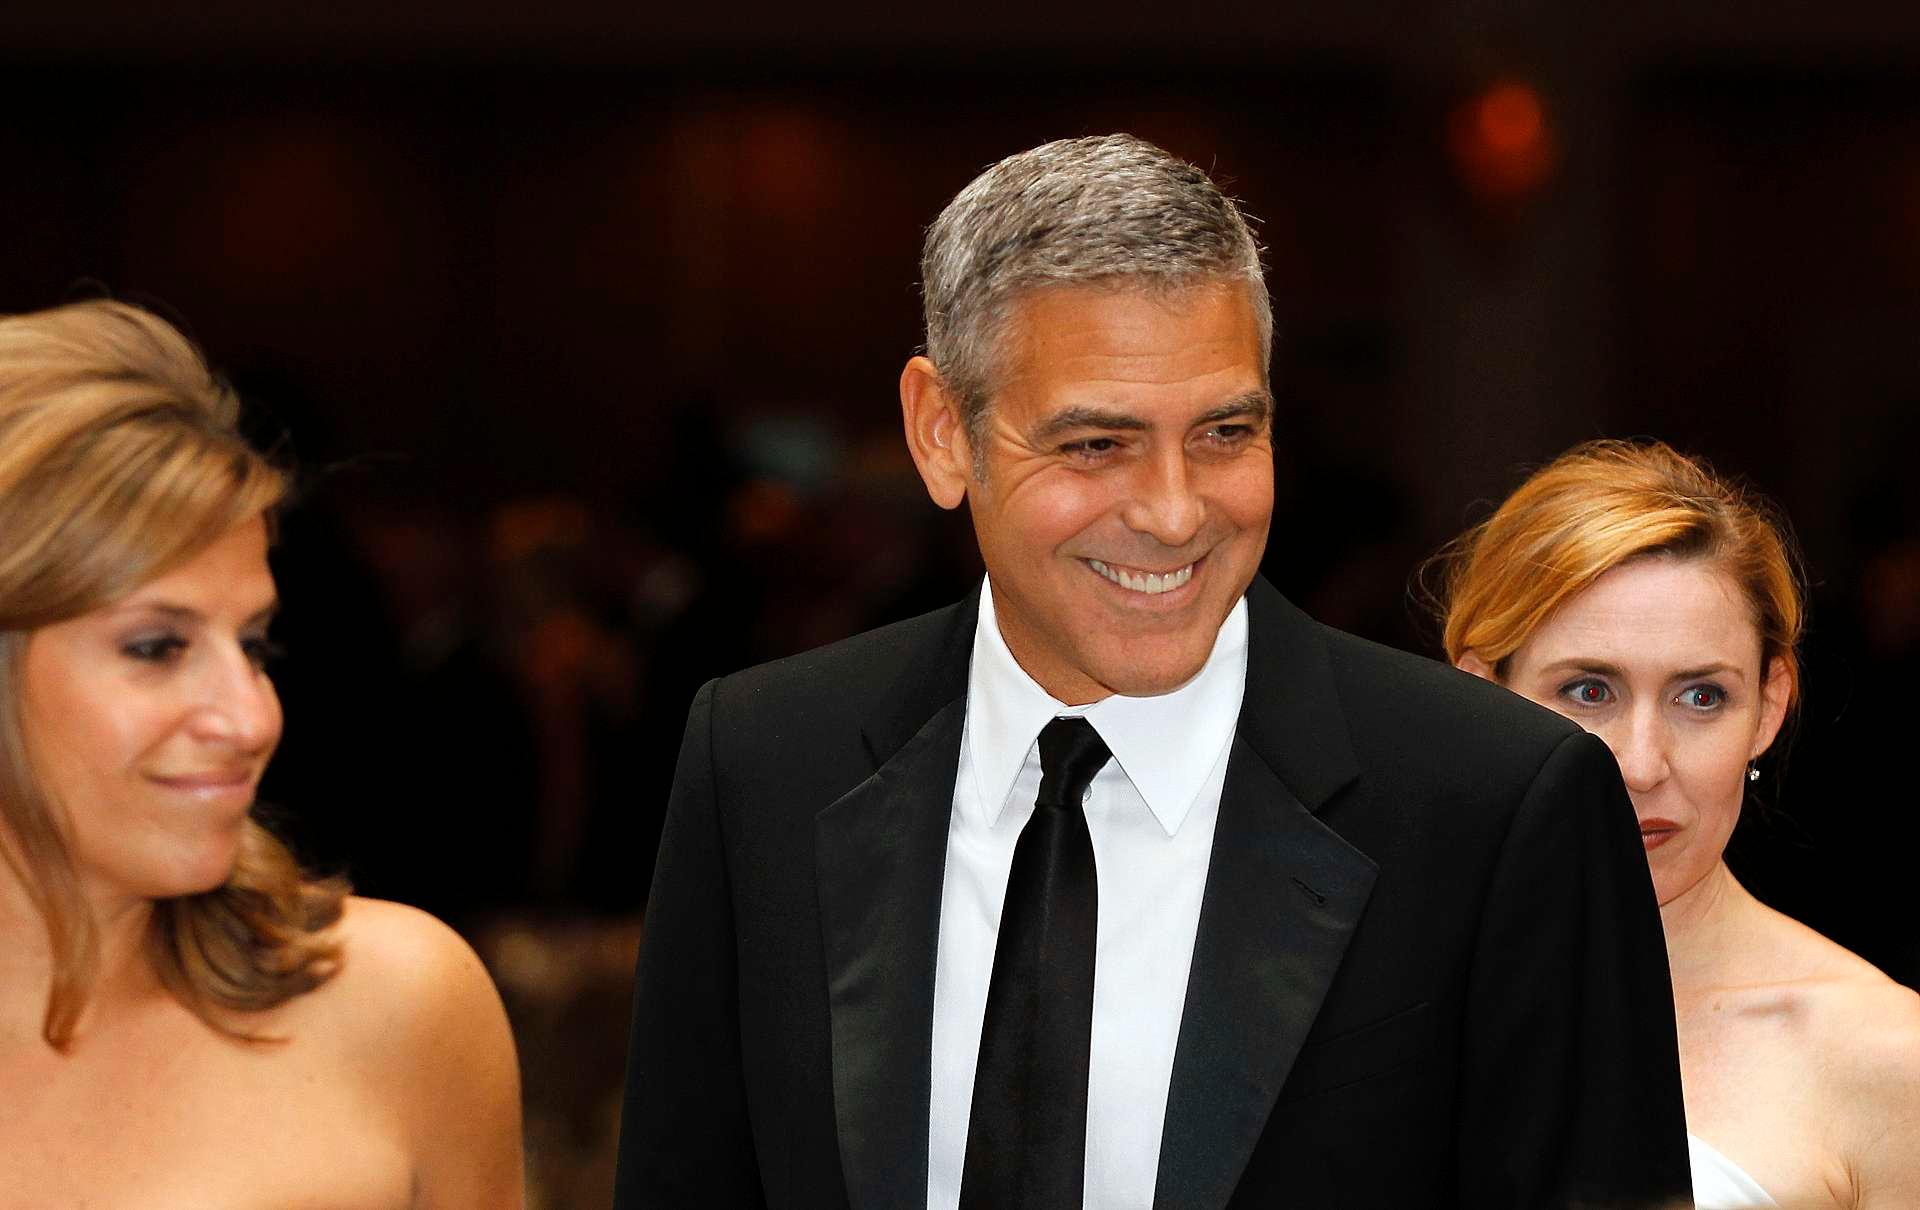 Middagene er blitt stjernespekkede de siste tiårene. I 2012 var George Clooney blant gjestene.